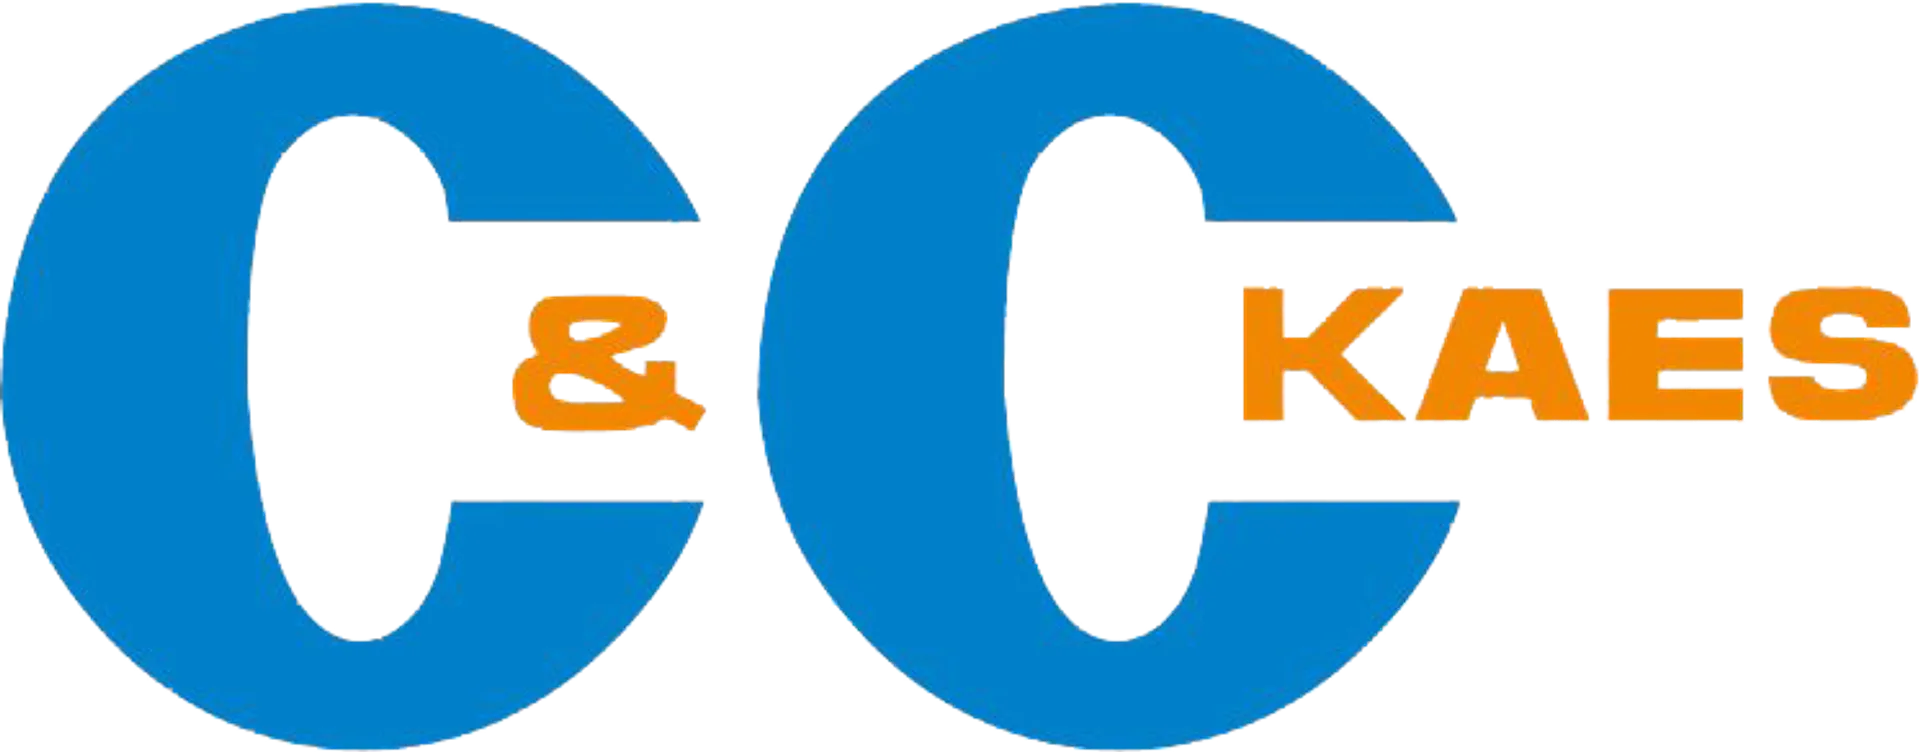 C&C logo